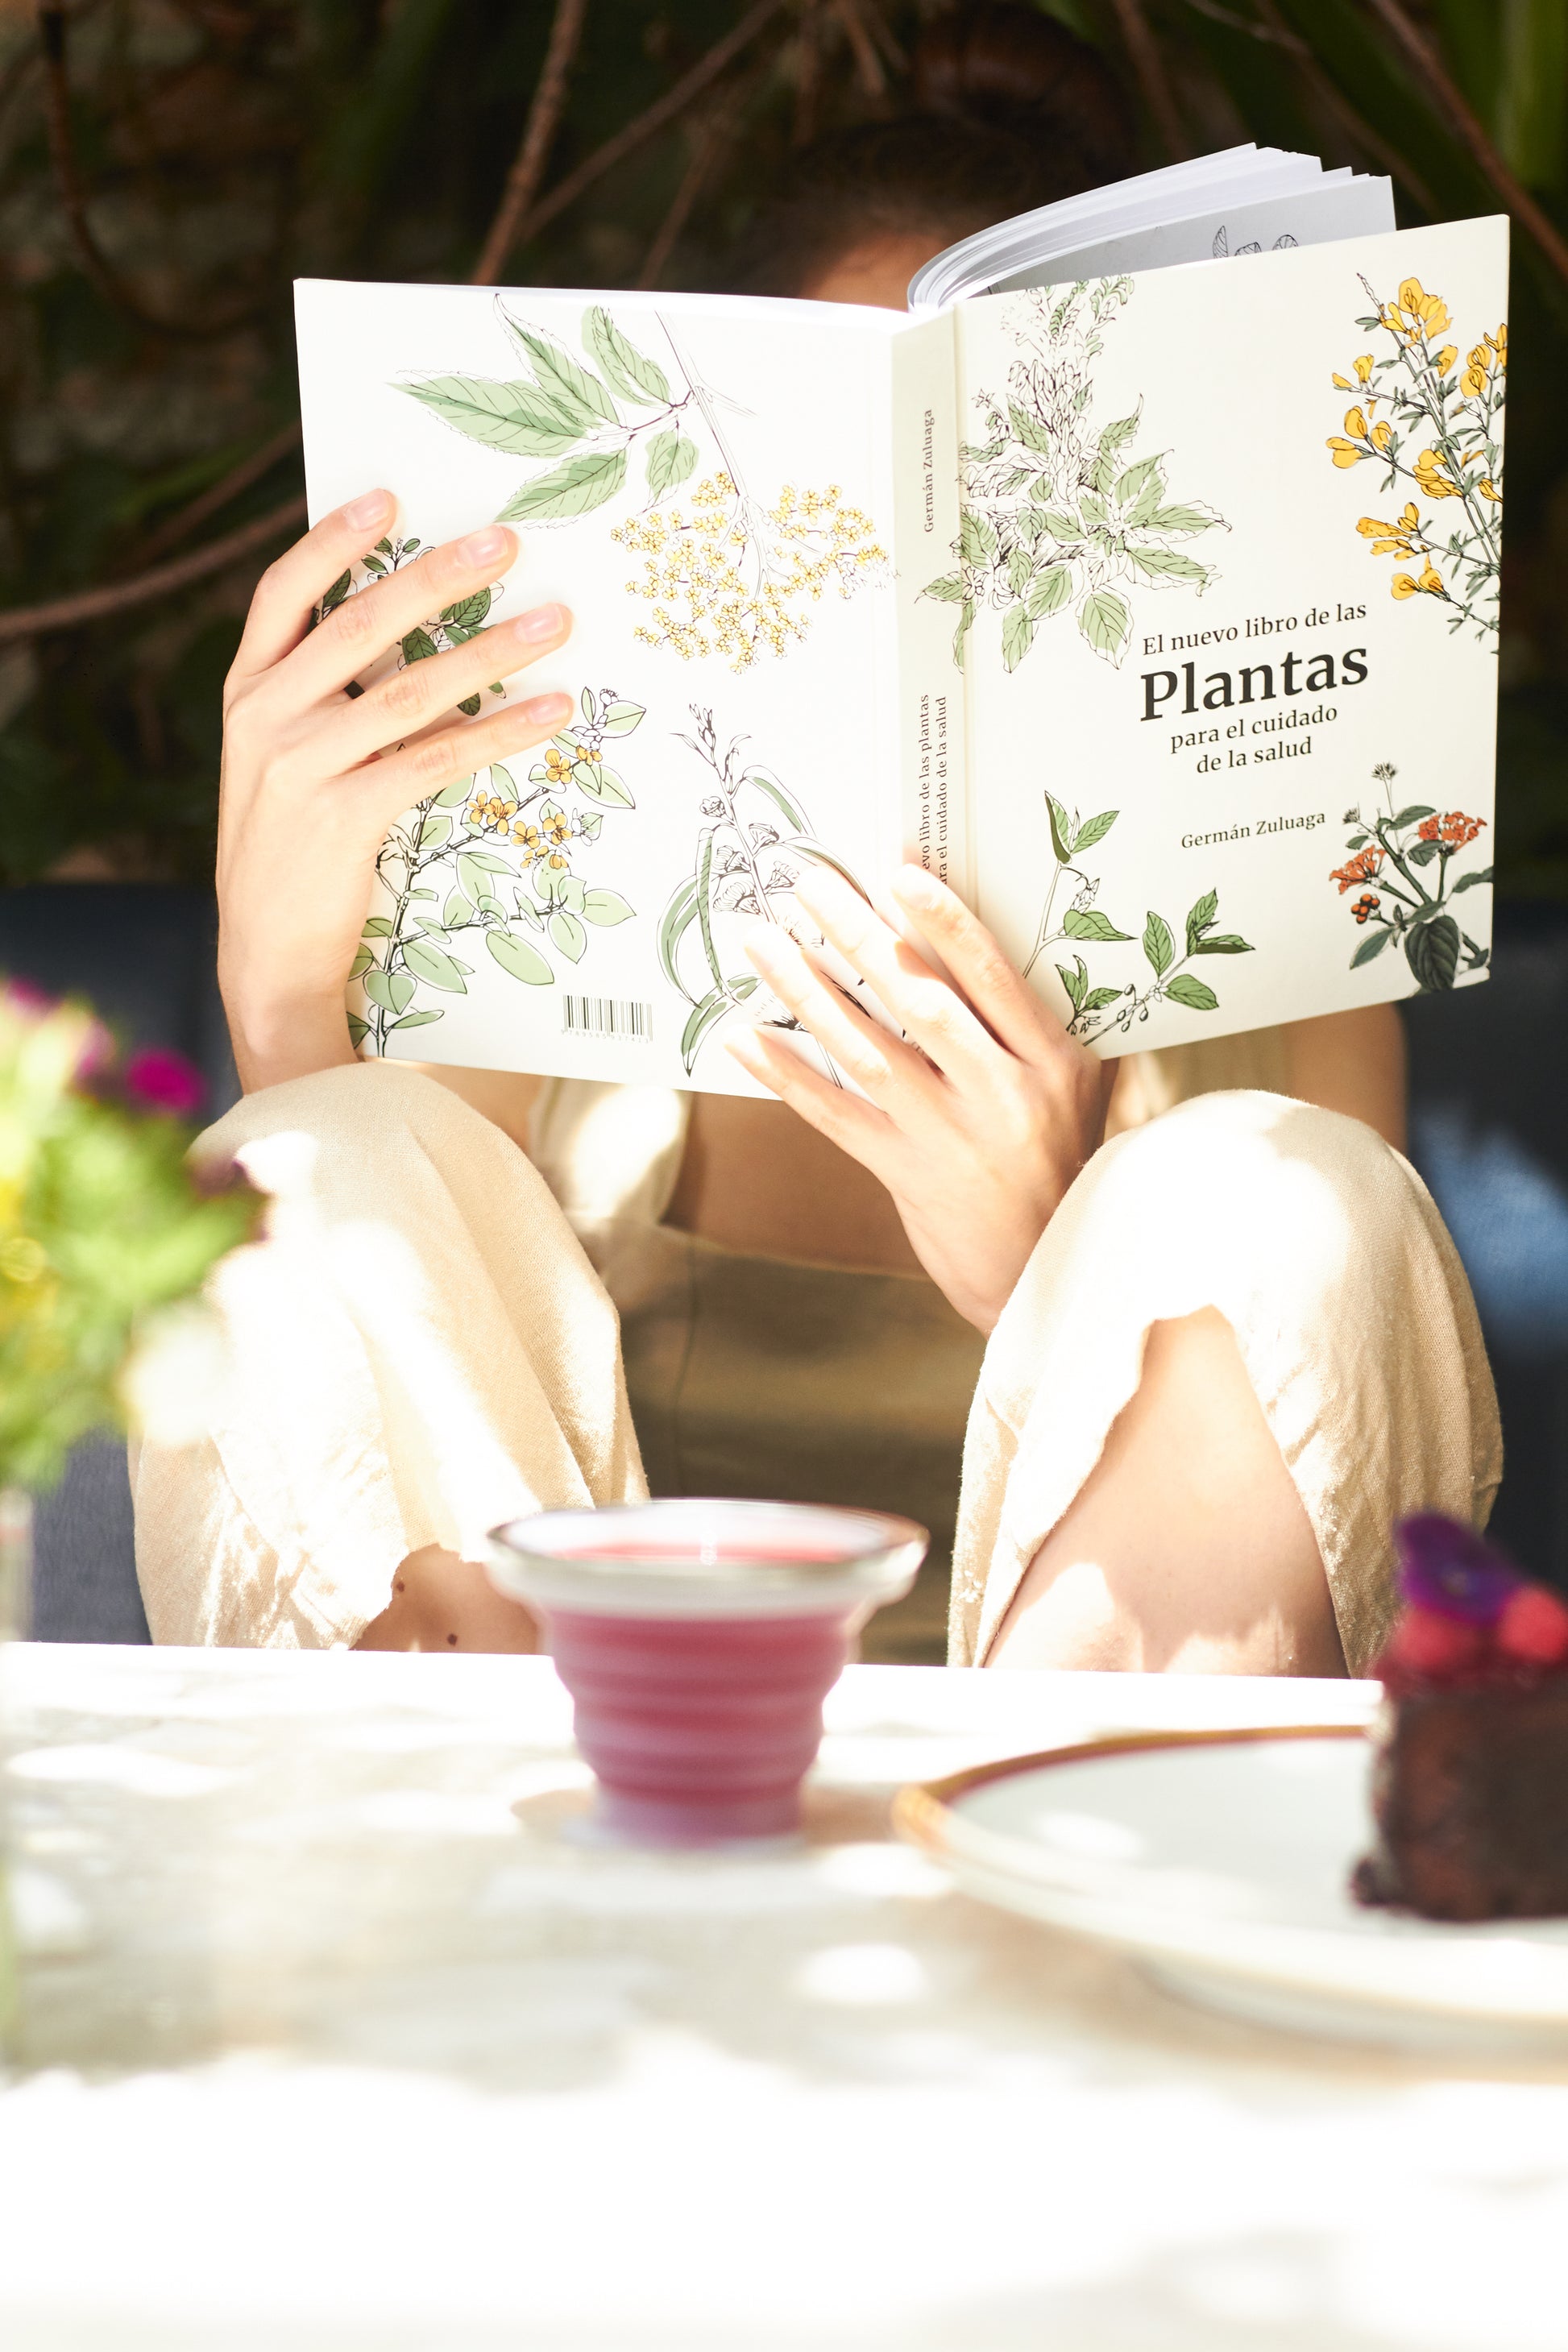 El nuevo libro de las plantas para el cuidado de la salud, Germán Zuluaga en hardback - La Tortuga y La Liebre